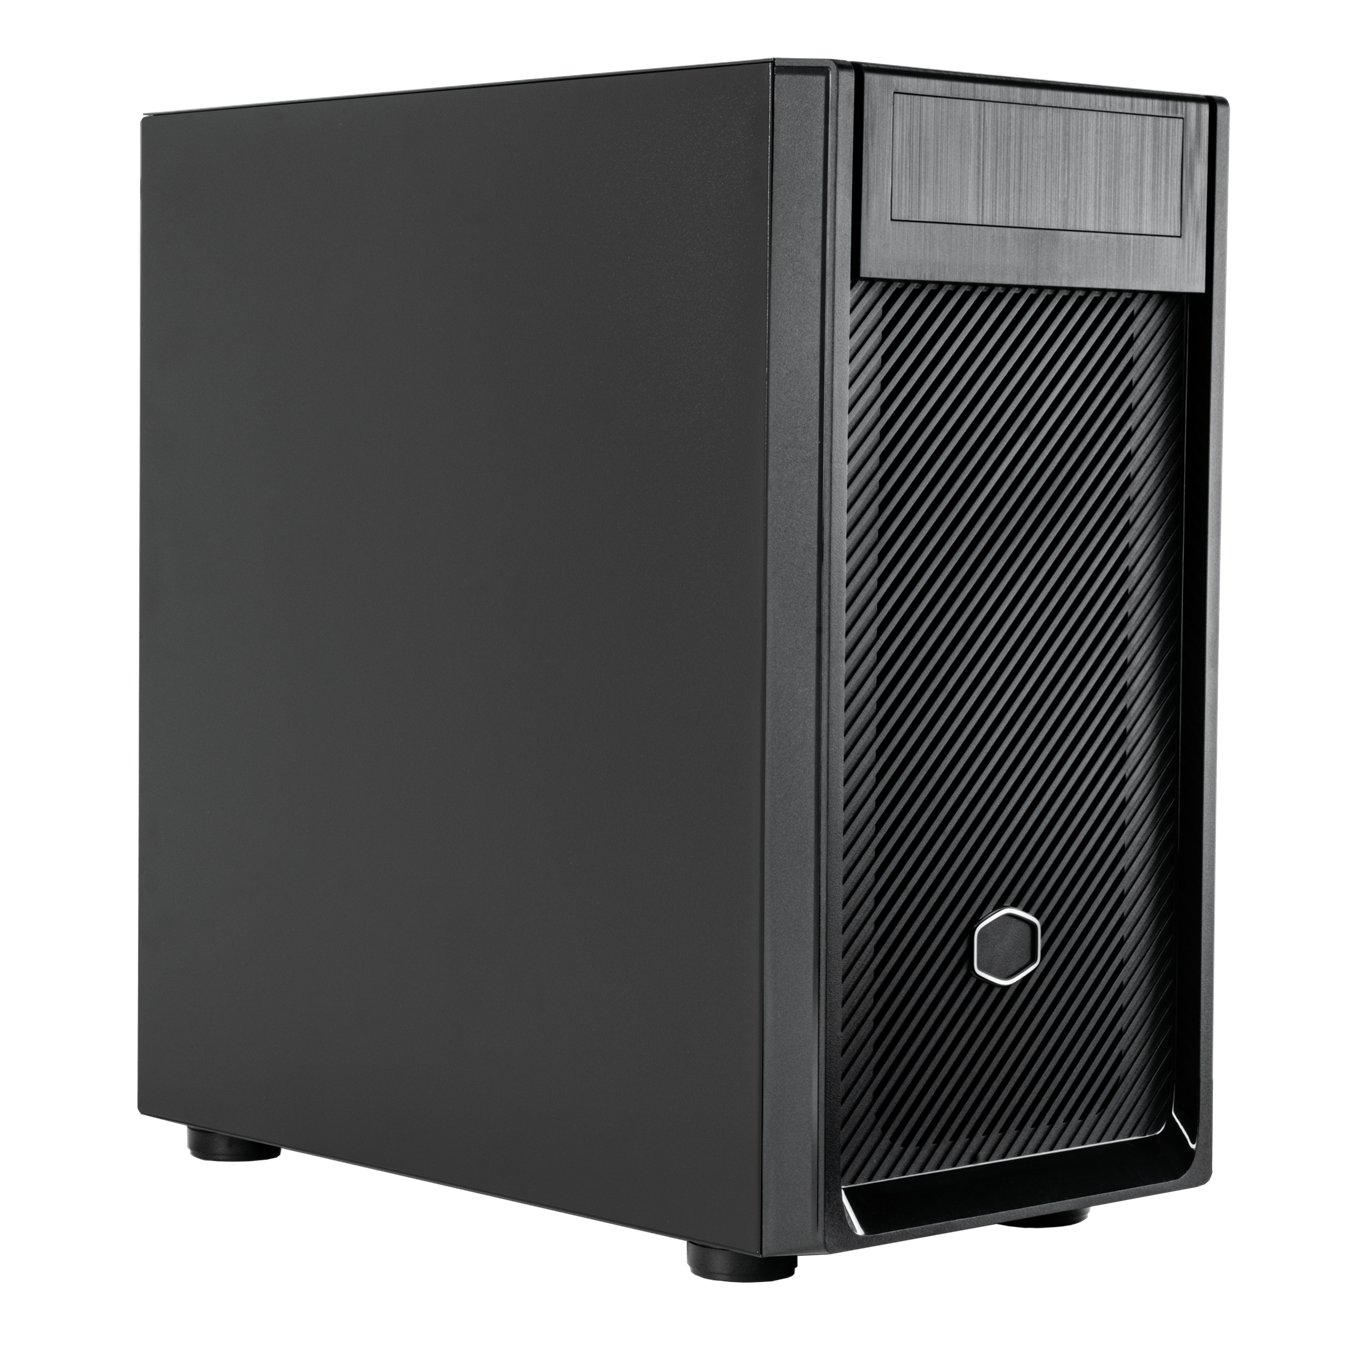  Mini-Tower Case: Elite 300 With 500W PSU - Black<BR>1x 120mm Fan, 2x USB 3.2 Gen 1, 1x 5.25" Bay, Solid Side Panel, Supports: mATX/mini-ITX  